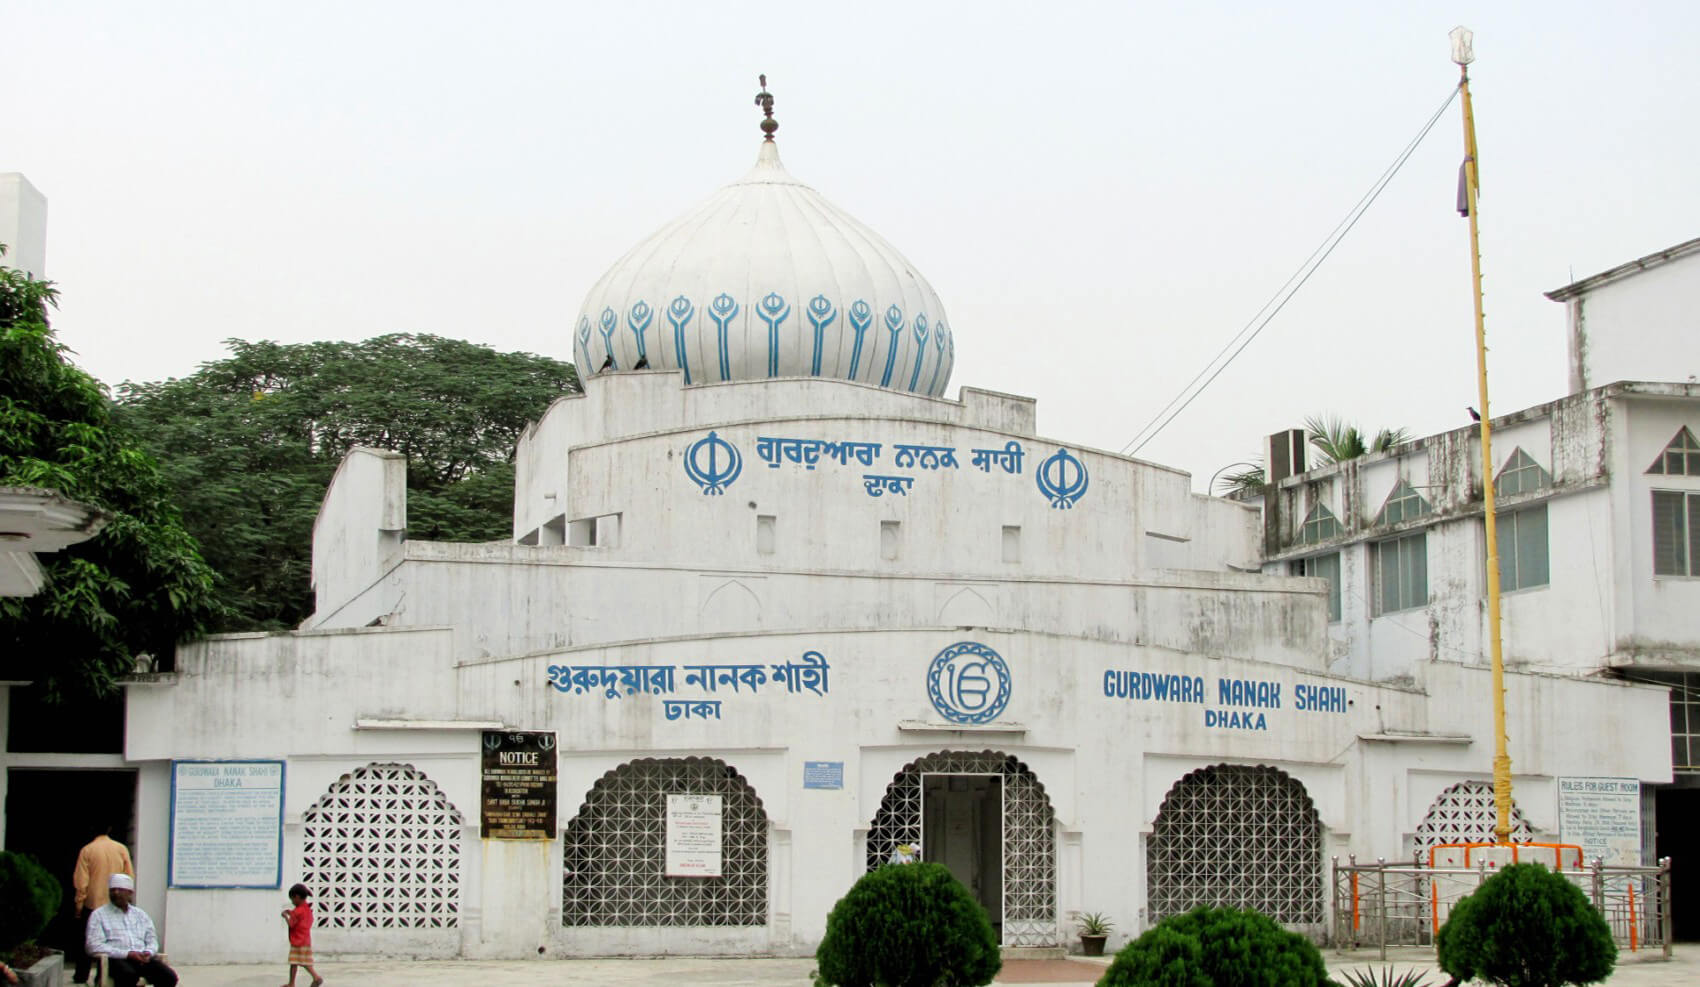 Gurdwara Nanak Shahi